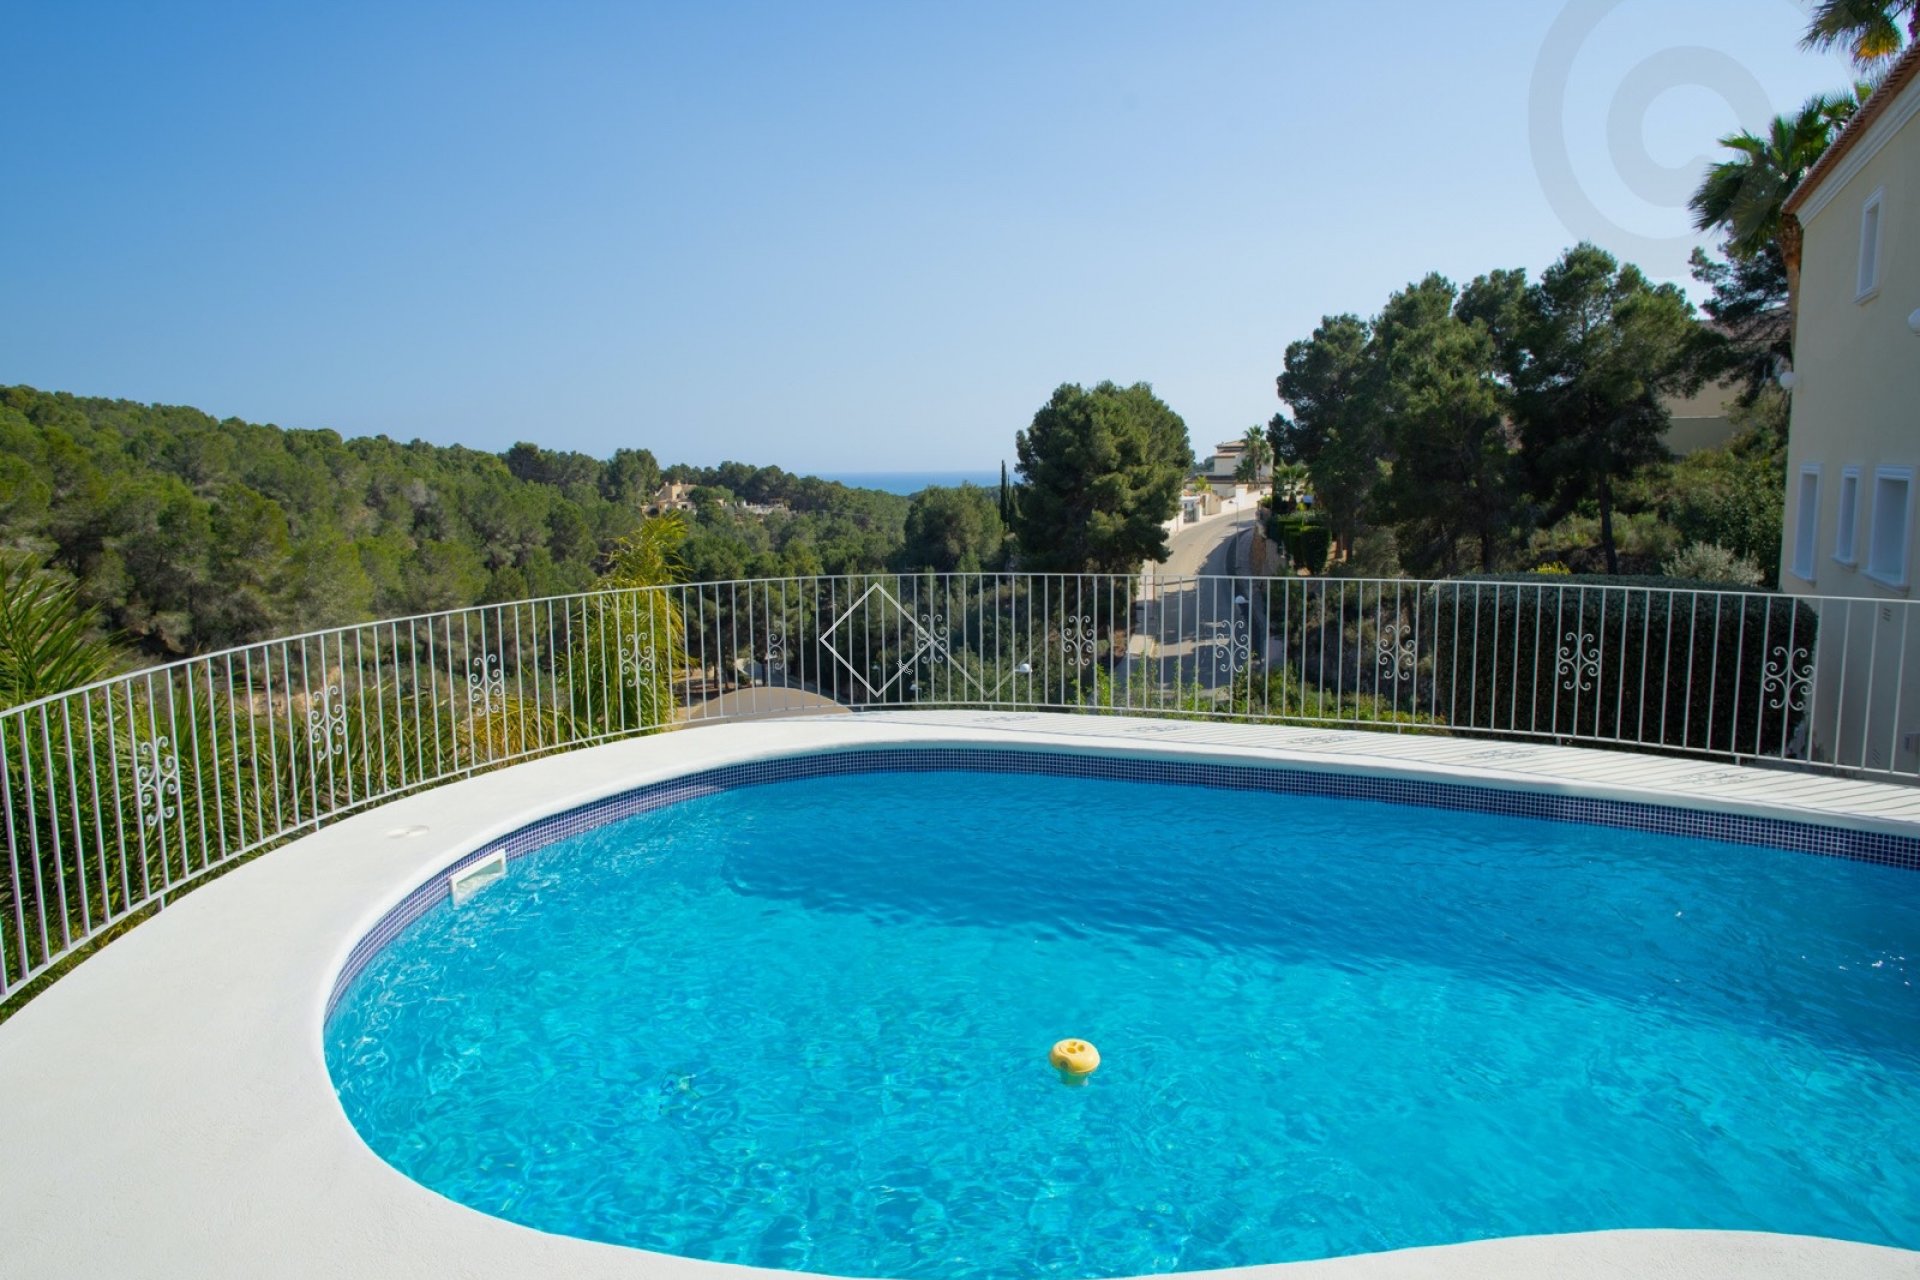 Poolblick - Modernisierte Villa zum Verkauf in Benissa mit schönem (Meer-)Blick 